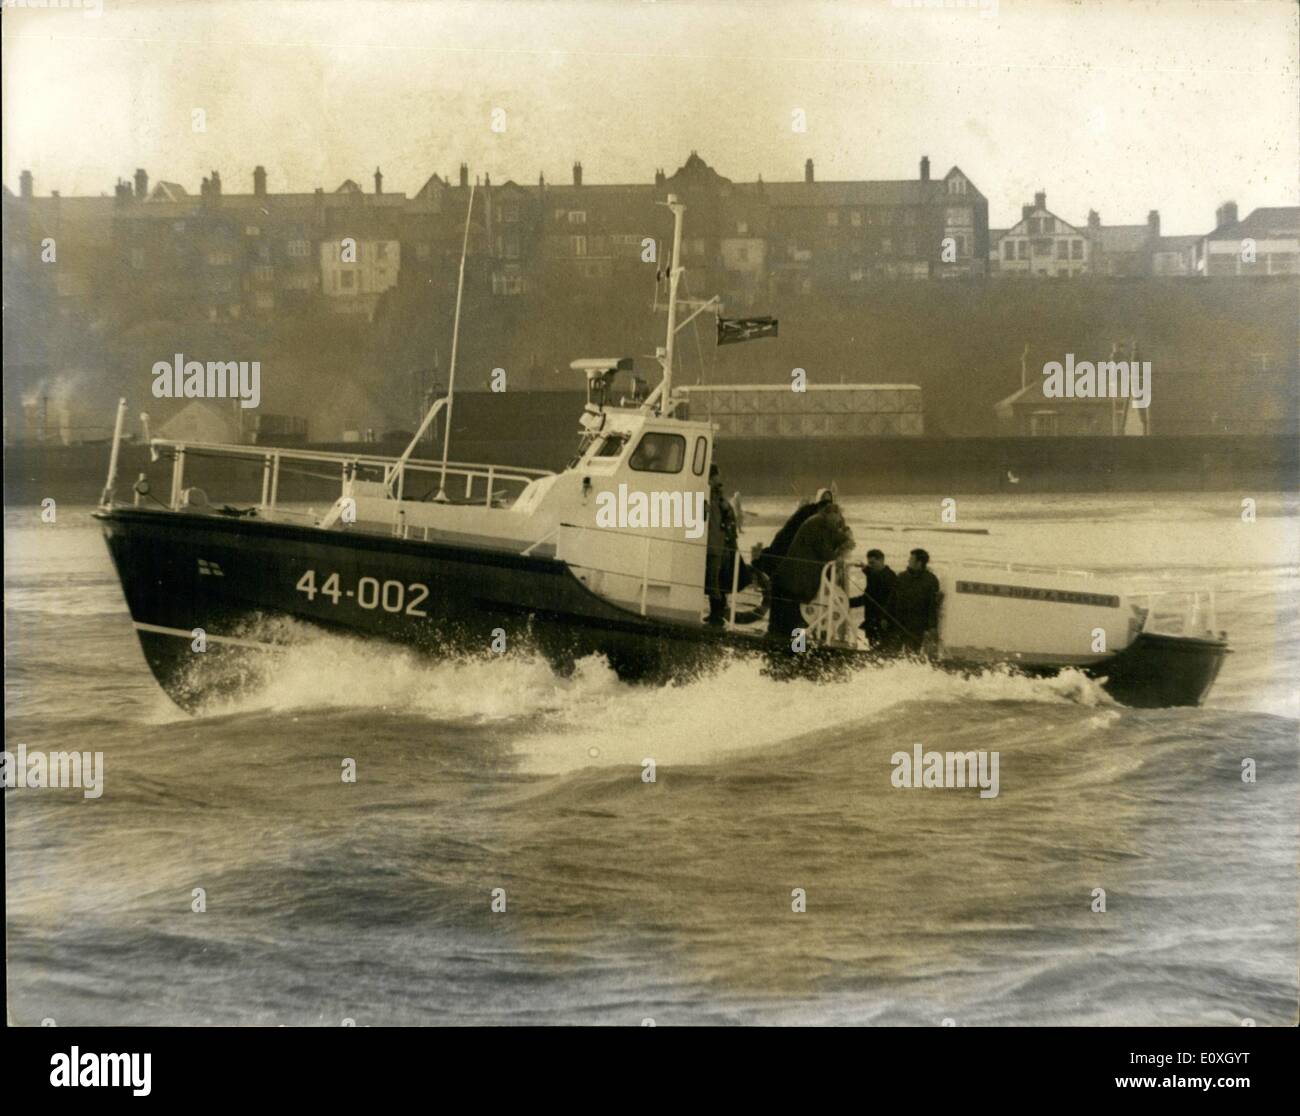 12. Dezember 1966 - Versuche eines neuen 44 Fuß langen Stahllebensbootes in Lowes: Das Rettungsboot 44-002 John F. Kennedy, das den Namen des verstorbenen Präsidenten der Vereinigten Staaten trägt, ist der forst einer Flotte von sechs 44-Foor Stahl-Rettungsbooten, die in den kommenden Monaten mit der R.N.L.I. in Dienst treten werden Das ultimative Ziel des John F. Kennedy, das teilweise durch ein Vermächtnis von 20,000 finanziert wird, das von Miss Gibson Dublin hinterlassen wurde. Irland Stockfoto